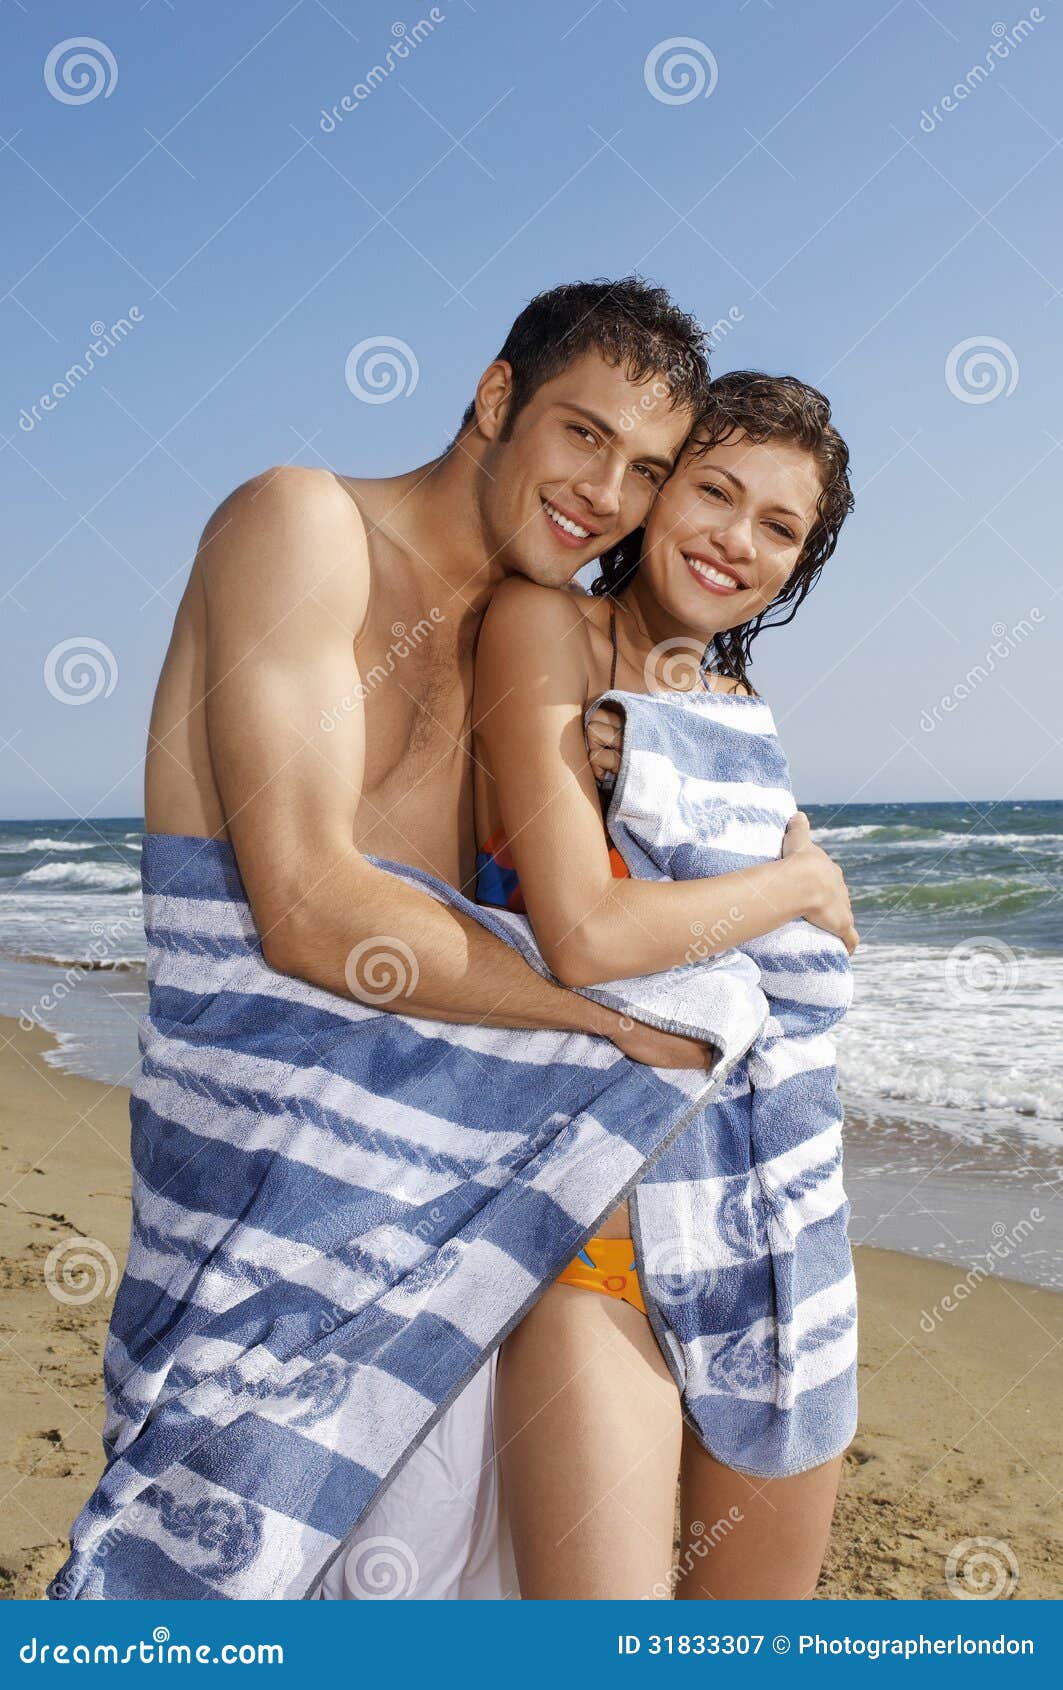 Полотенцем солнцем. Пара в полотенцах. Полотенца для пары. Пара в полотенцах на руках. Поцелуй на полотенце на пляже.